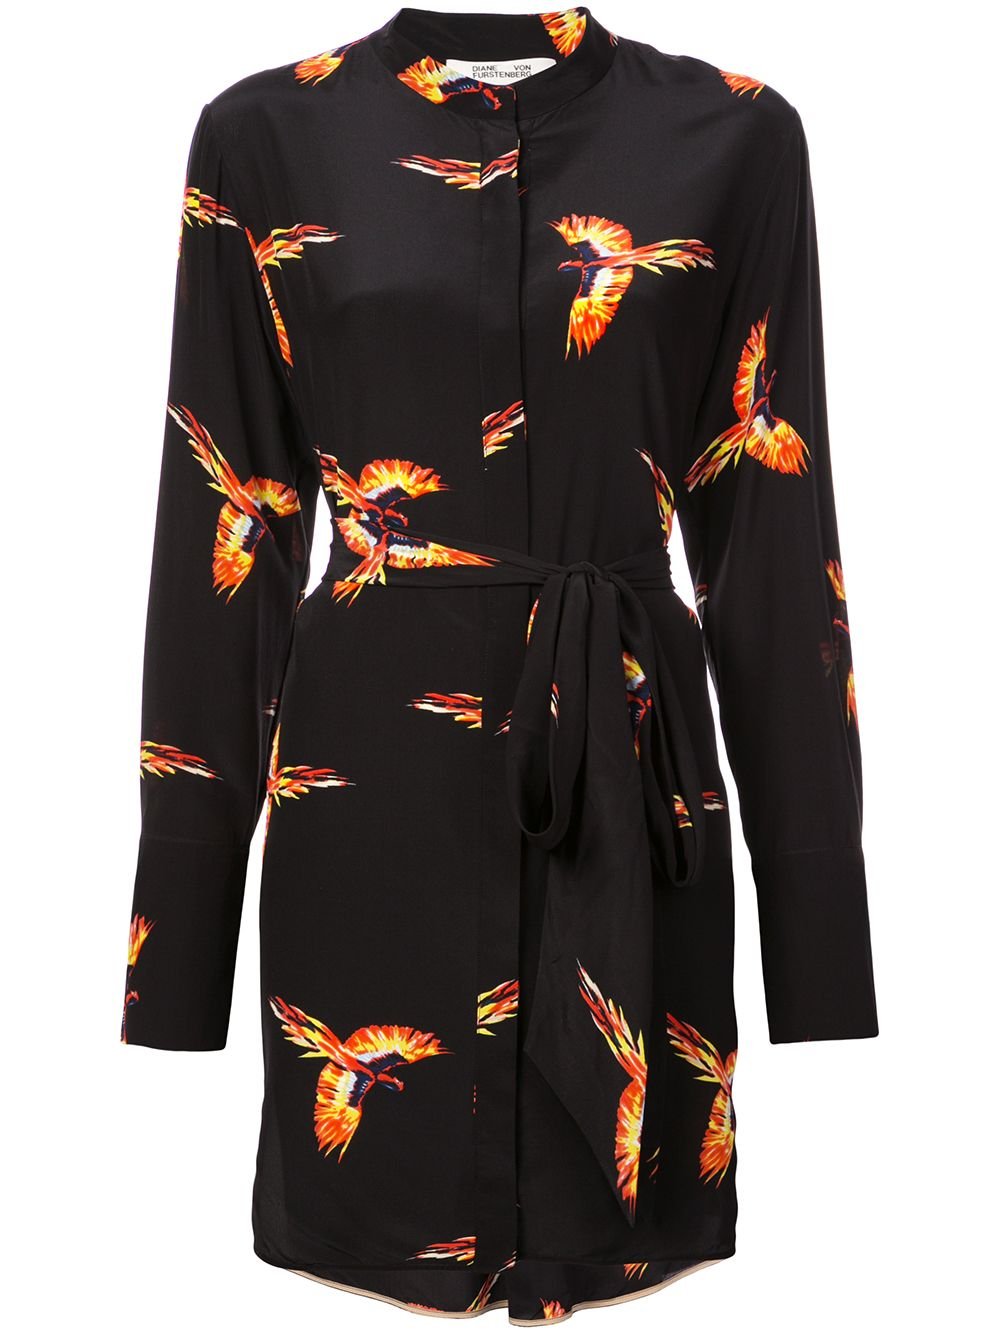 Diane von Furstenberg Aurora Bird-Print Shirt Dress in Black.jpg